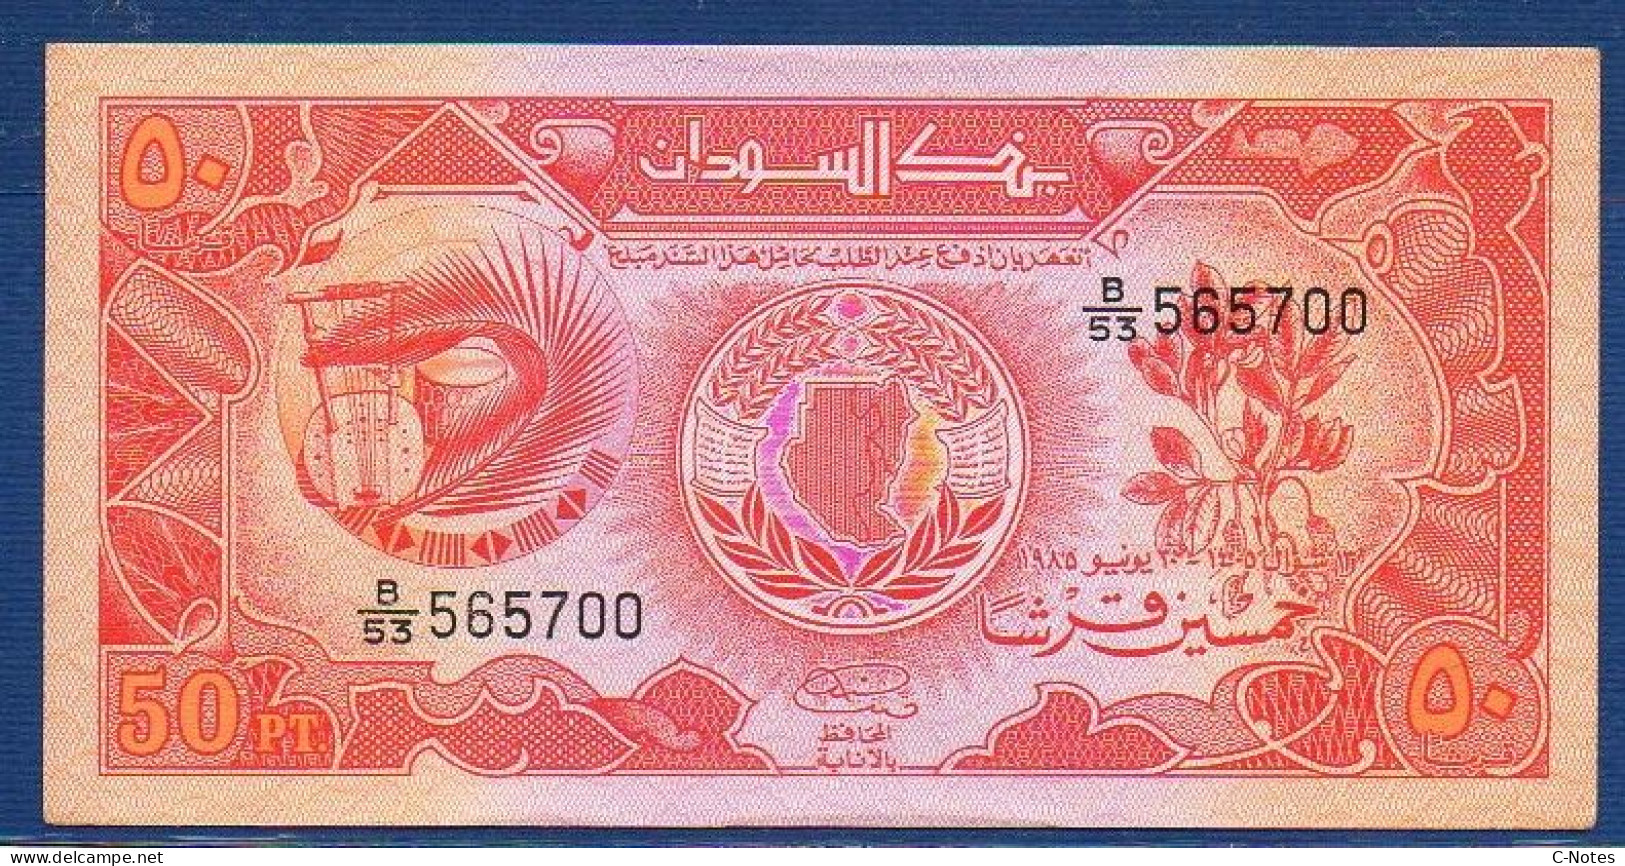 SUDAN - P.31 – 50 Piastres 1985 AUNC, S/n B/53 565700 - Soedan